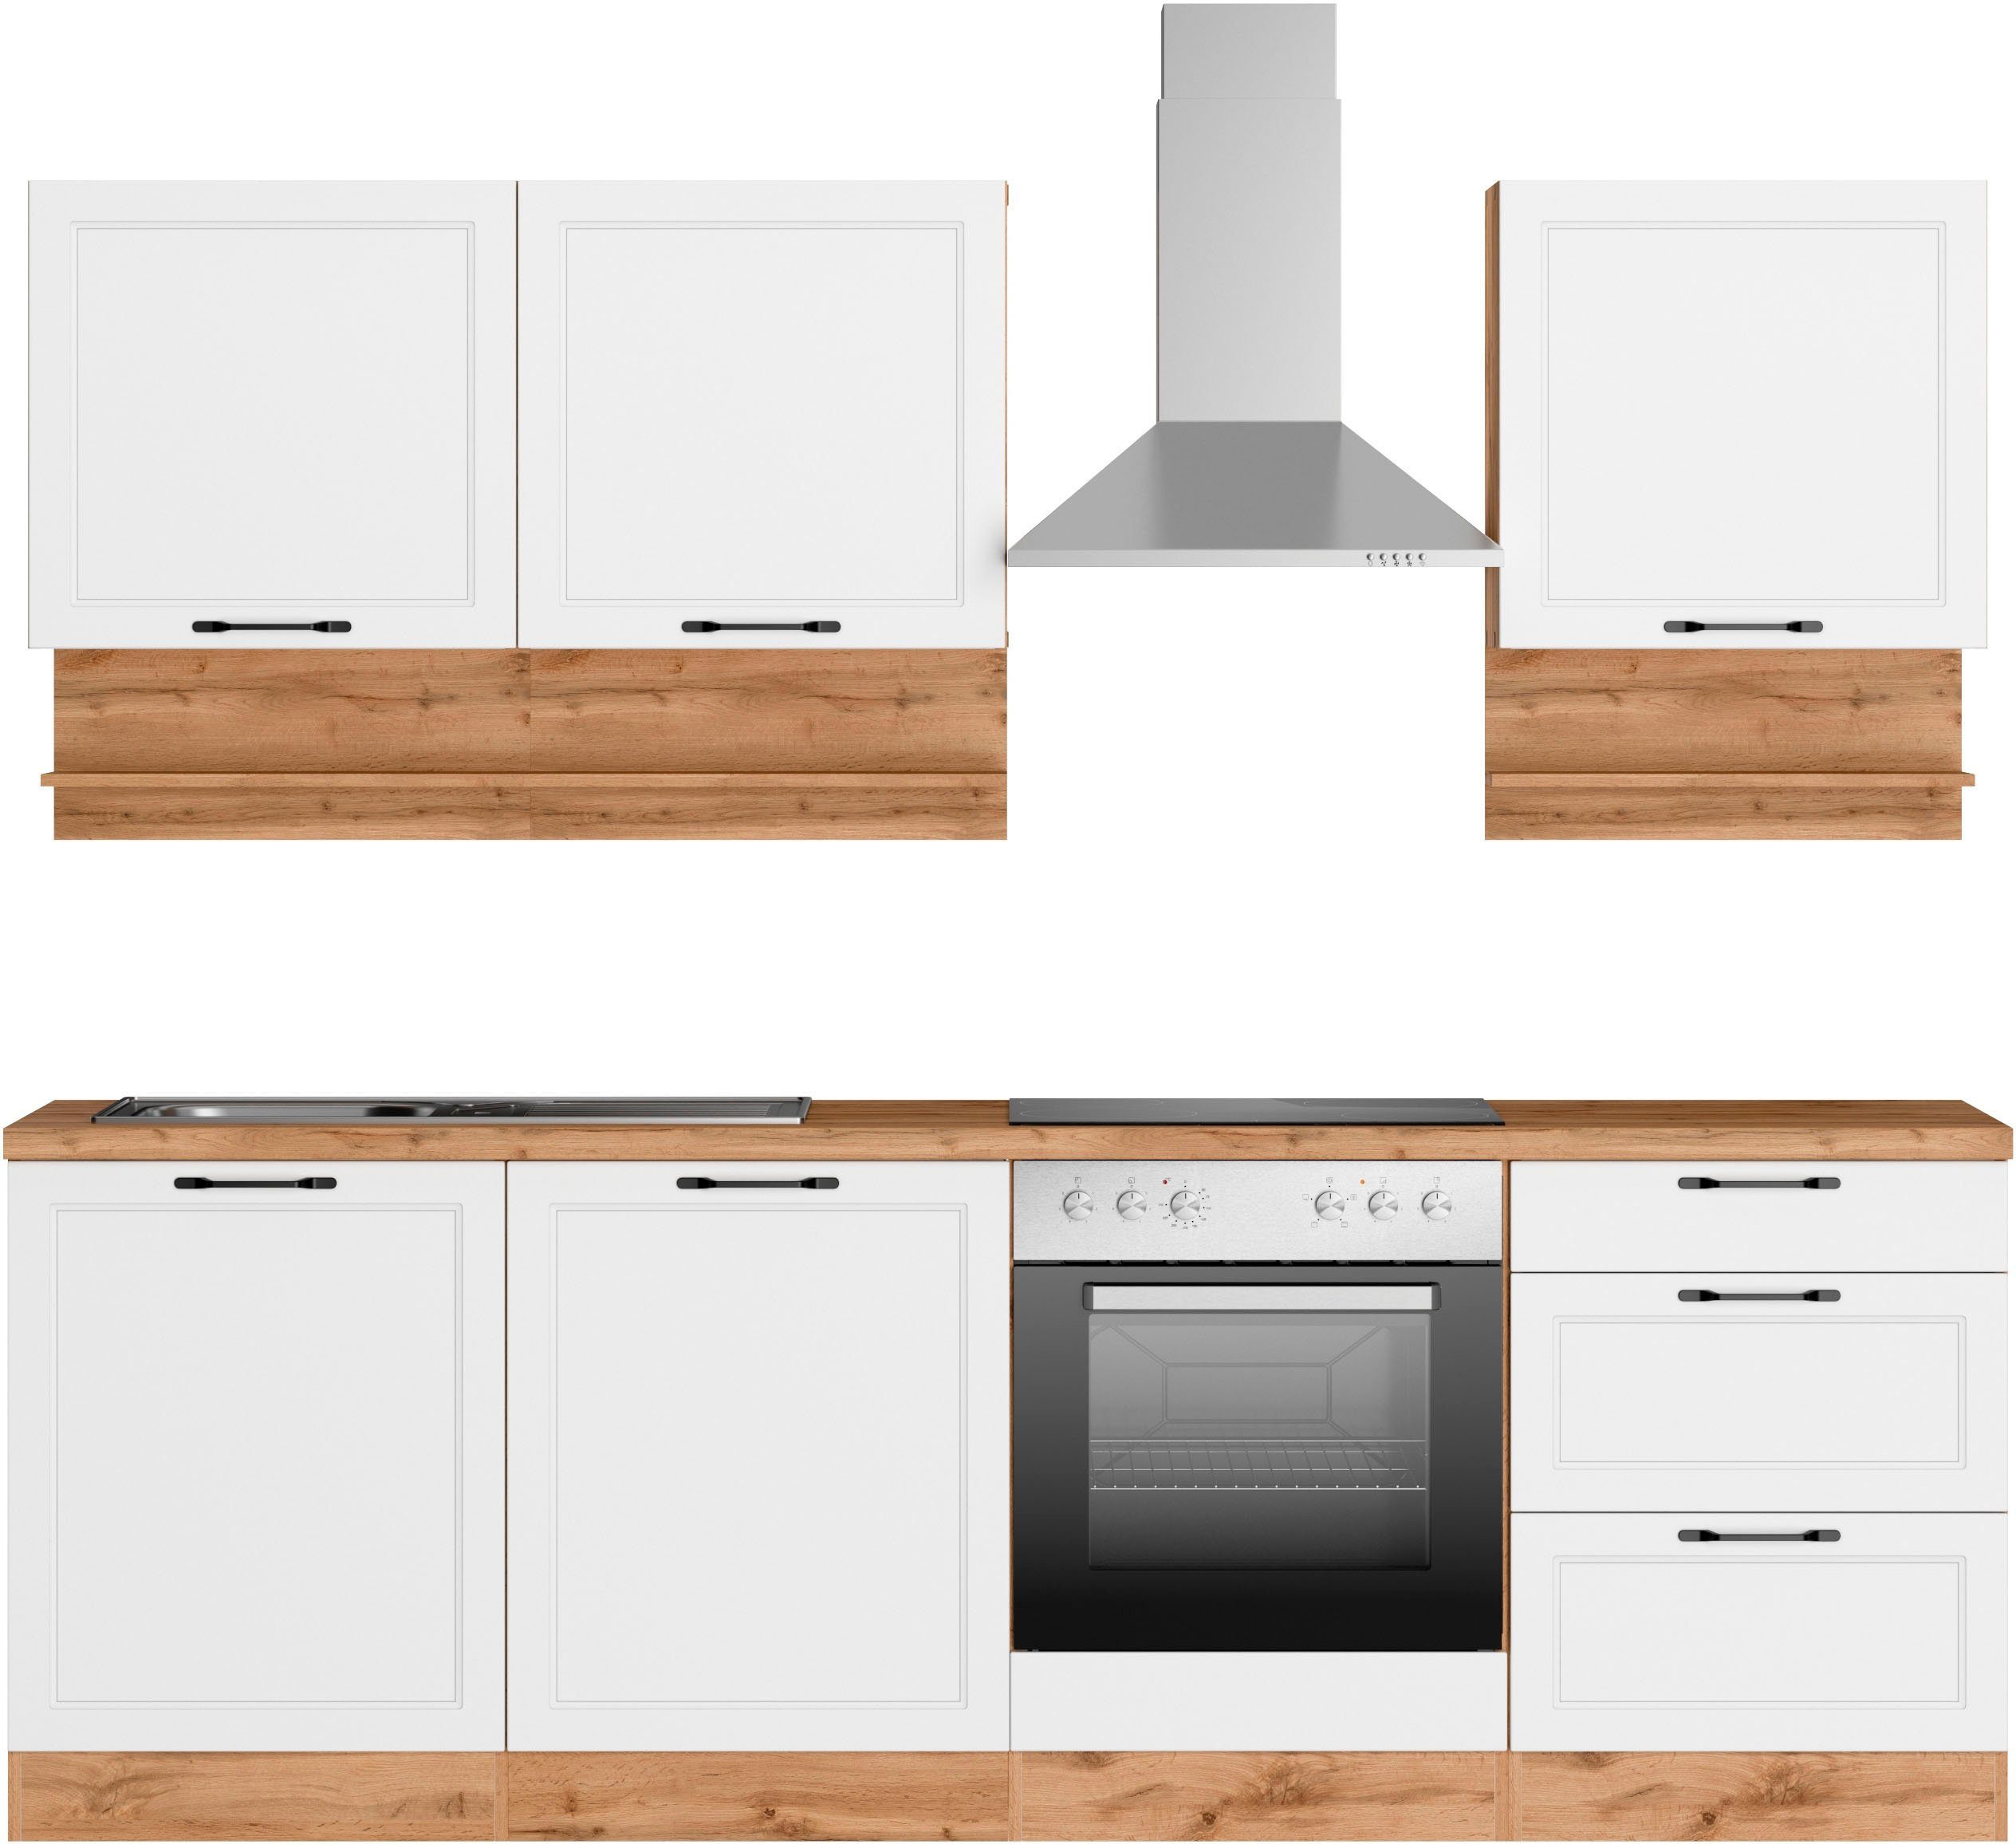 HELD MÖBEL Küche Lana, 240 cm breit, wahlweise mit oder ohne E-Geräte,  Hochwertig MDF-Fronten in modernen Landhausstil